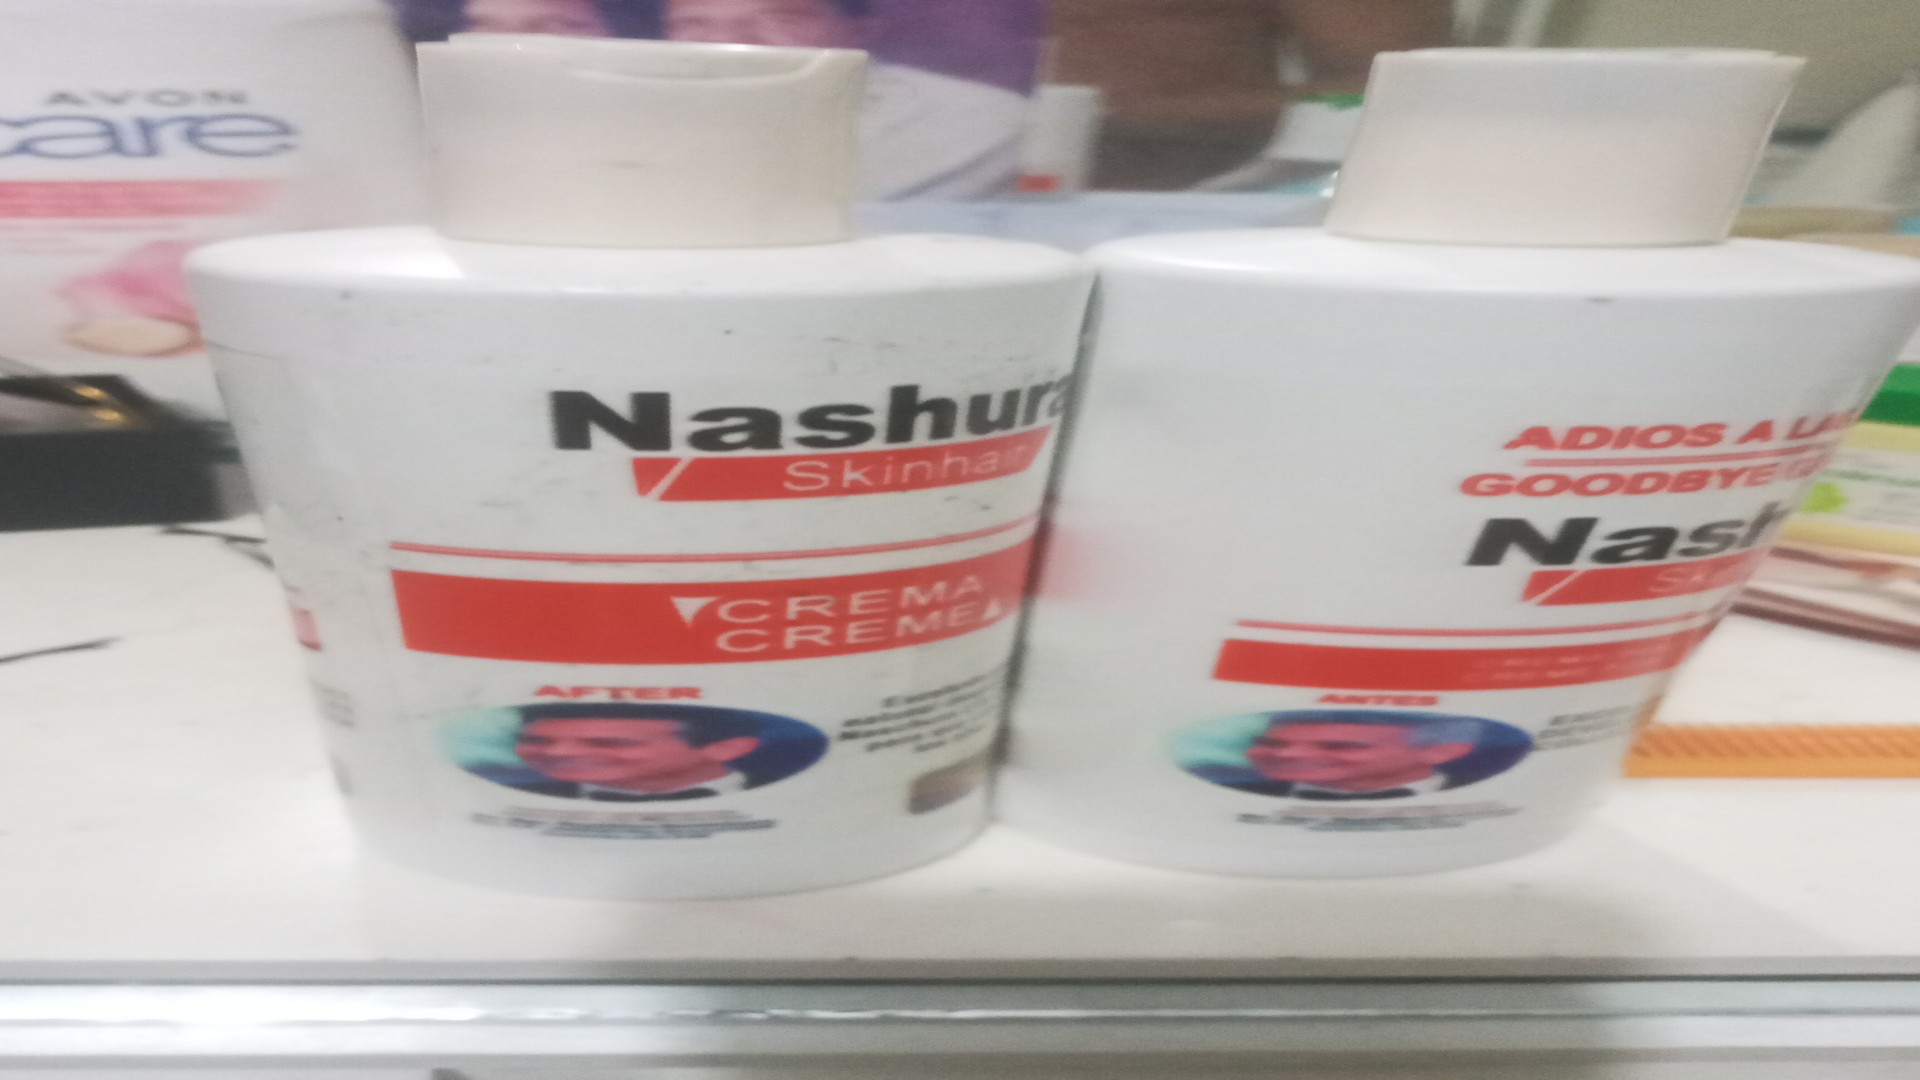 salud y belleza - Naschura Skin Haur

Priducto natural para las canas